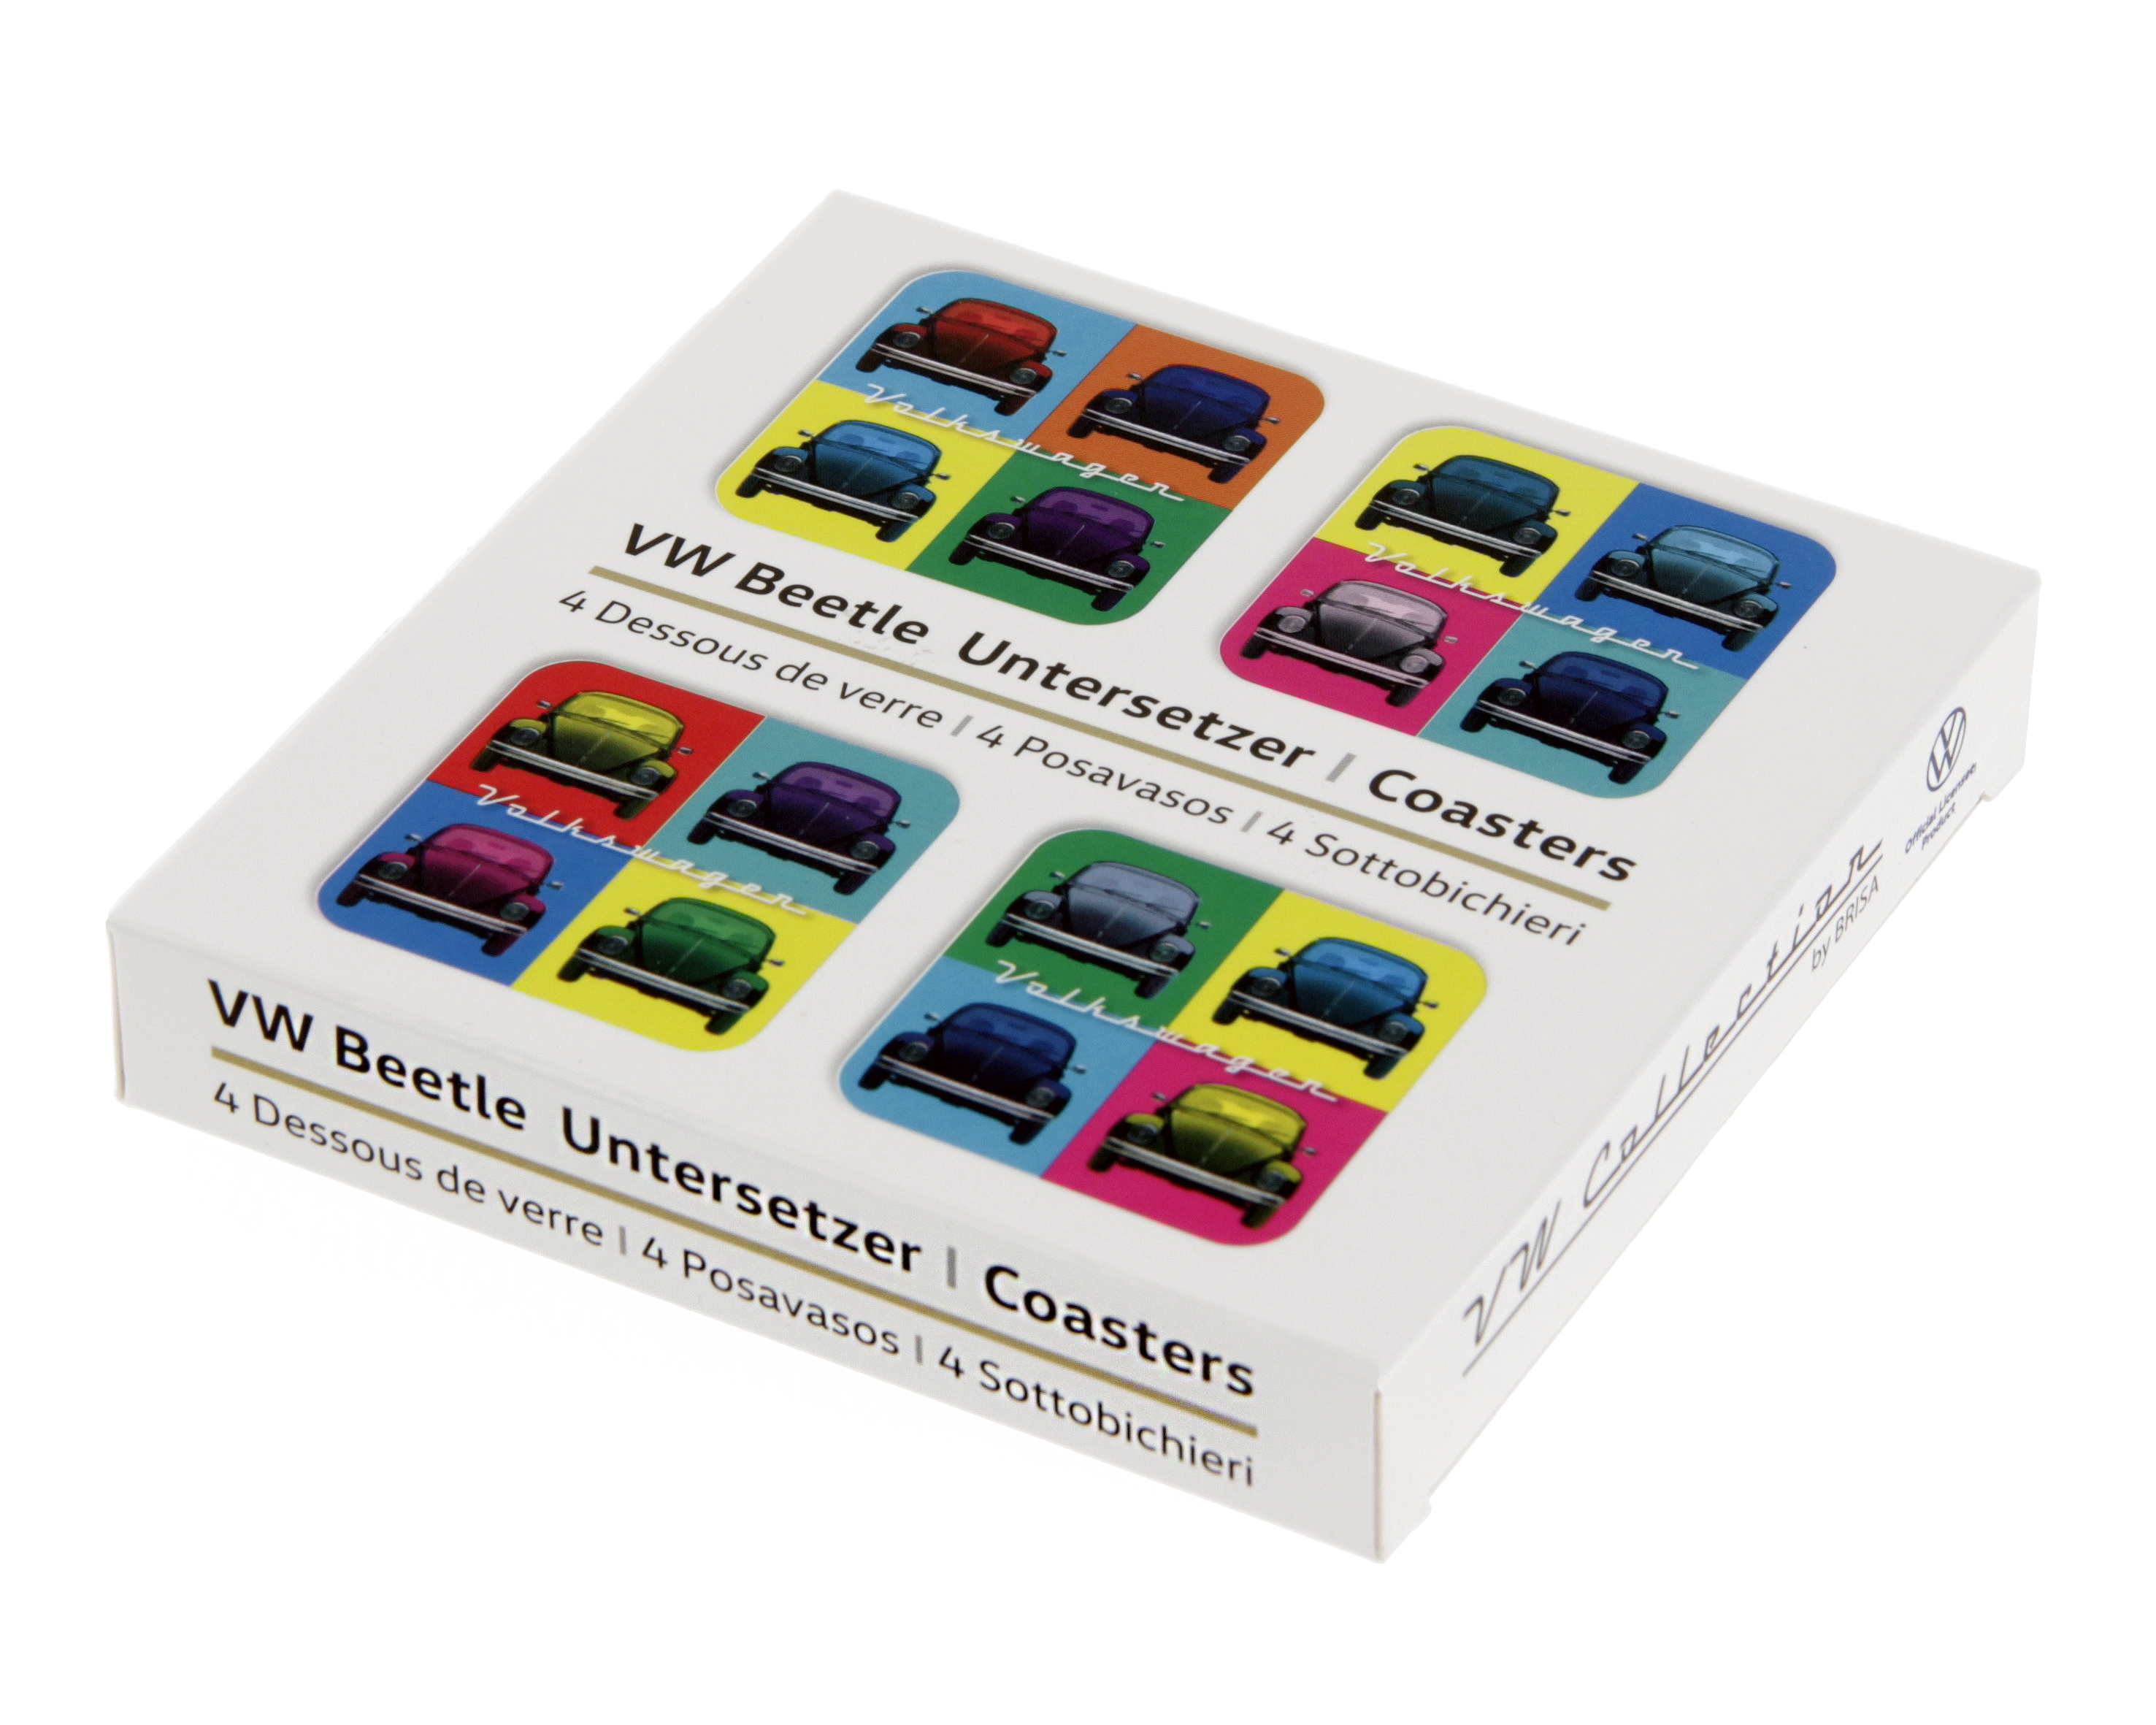 Juego de 4 posavasos VW Beetle en estuche de cartón - Multicolor